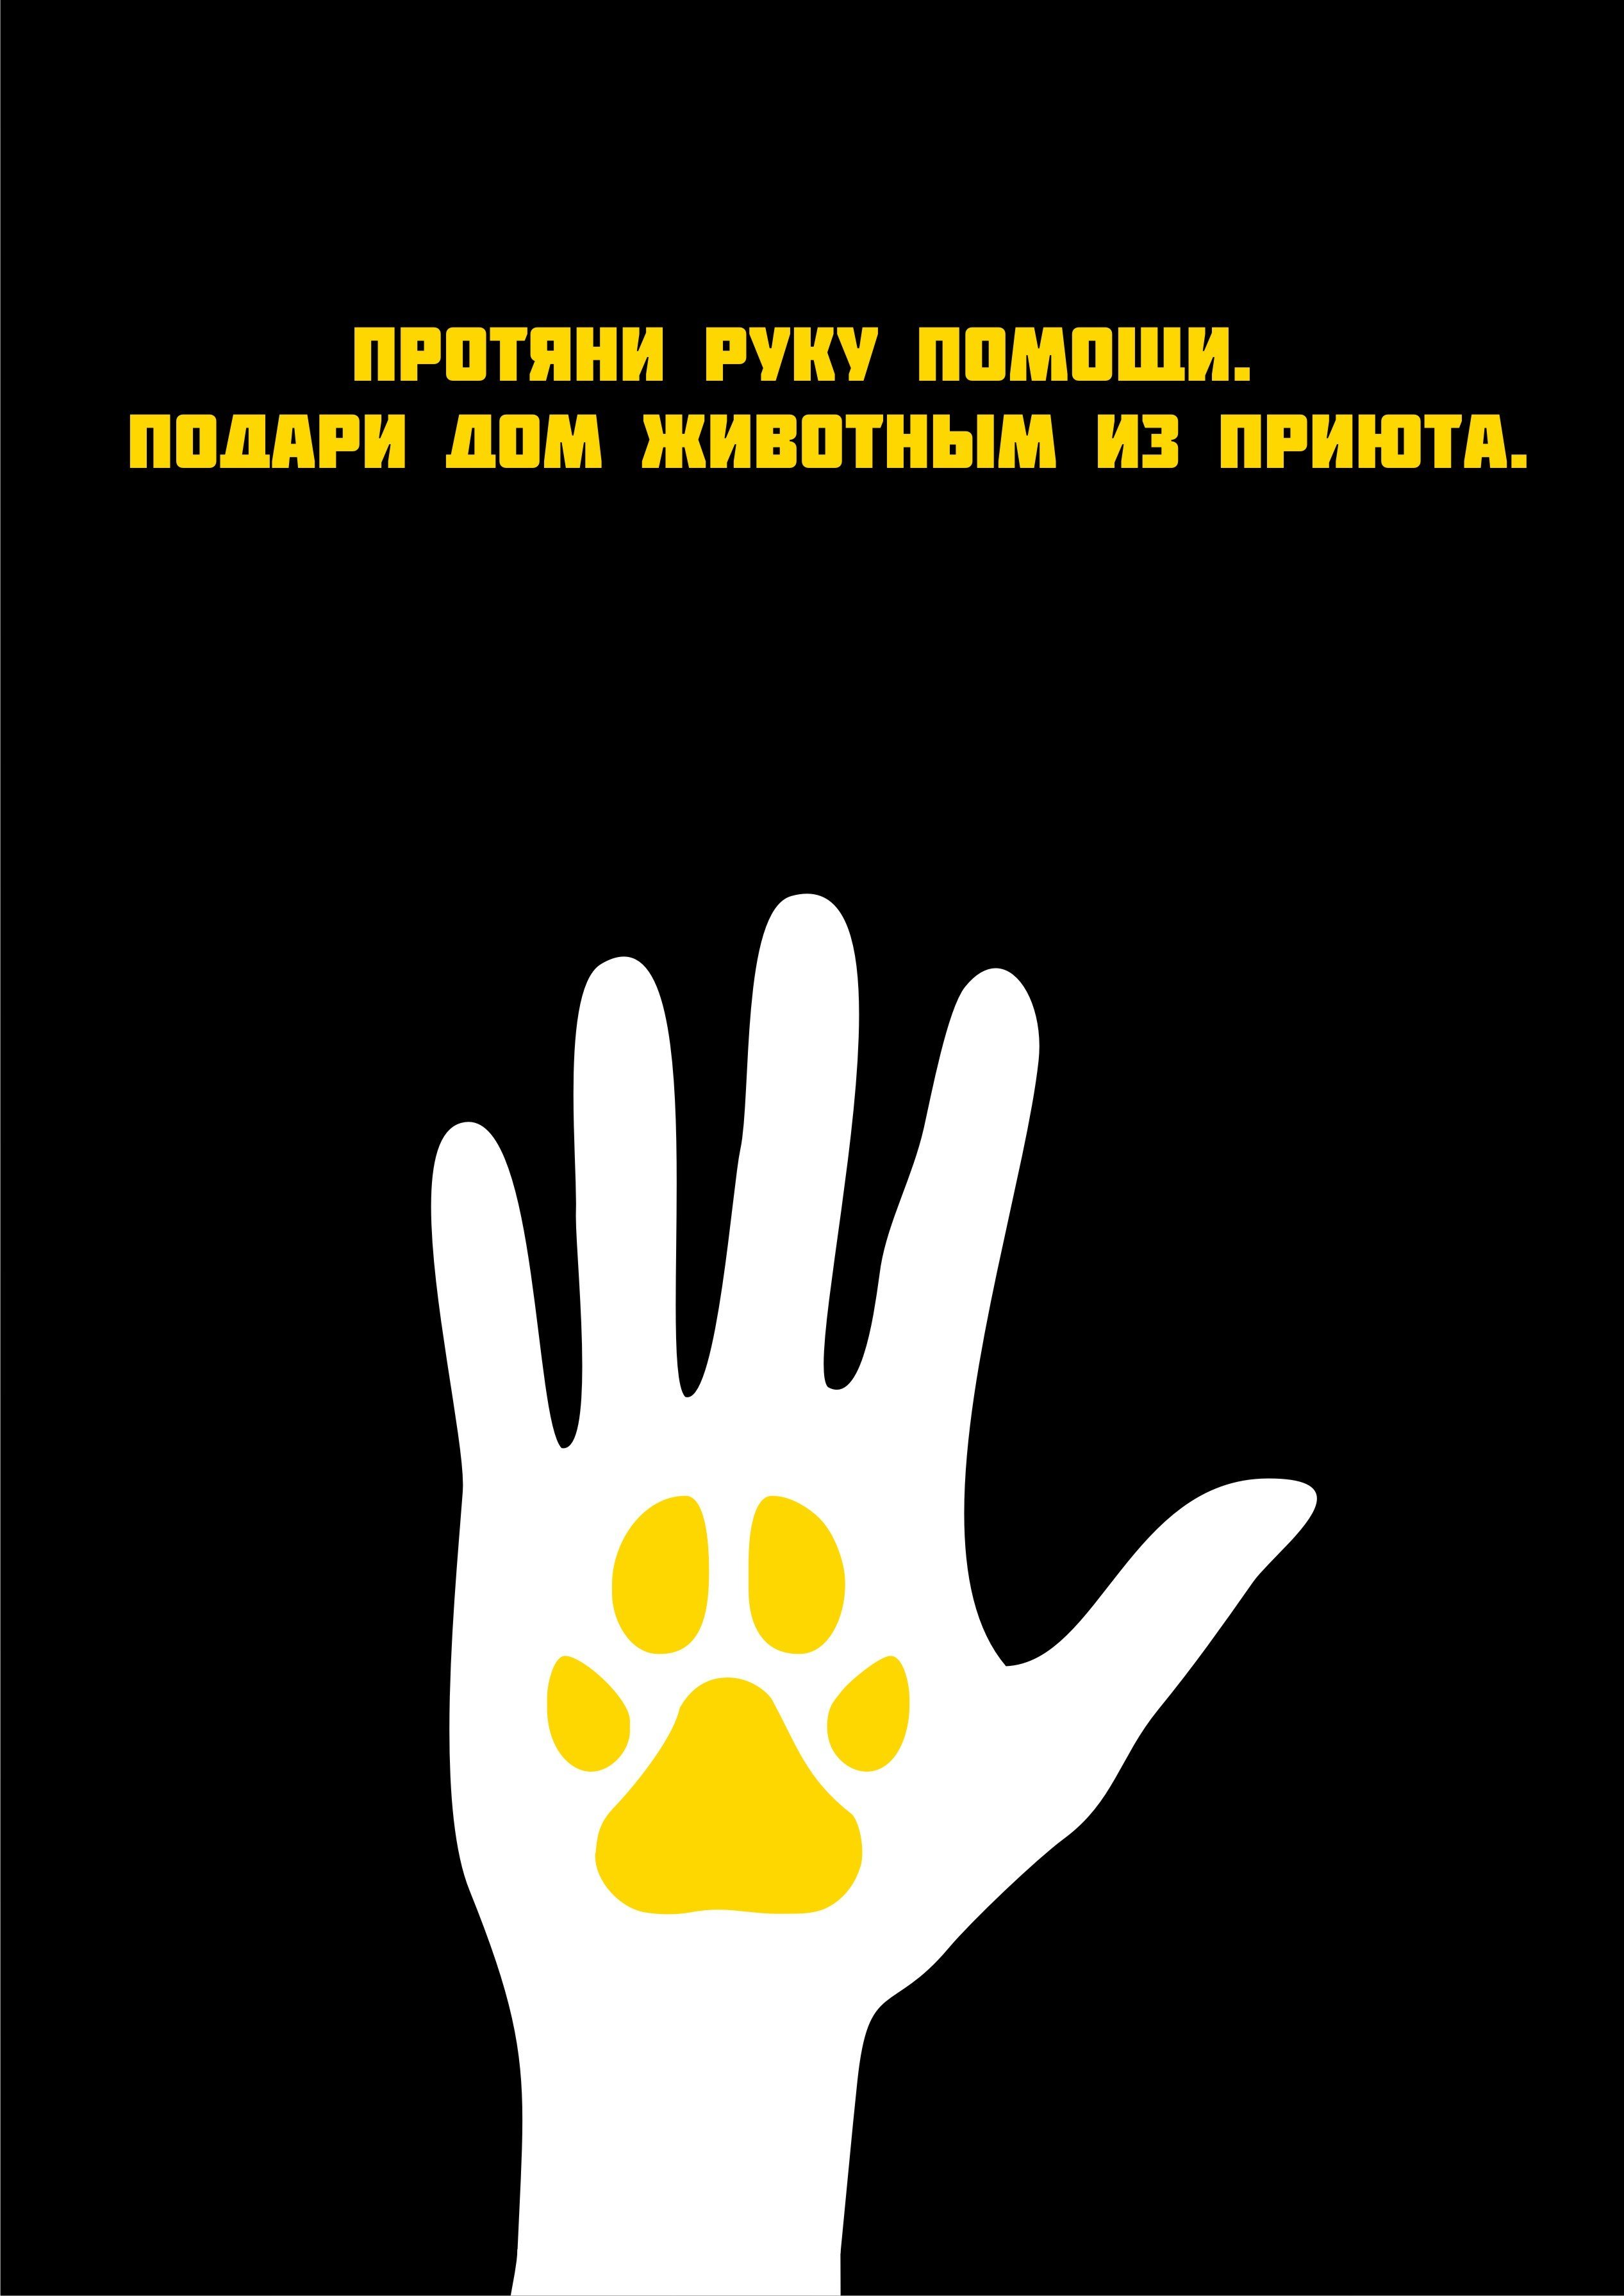 Слоган помощь. Социальный плакат. Современный социальный плакат. Социальная реклама плакат. Социальный плакат защита животных.